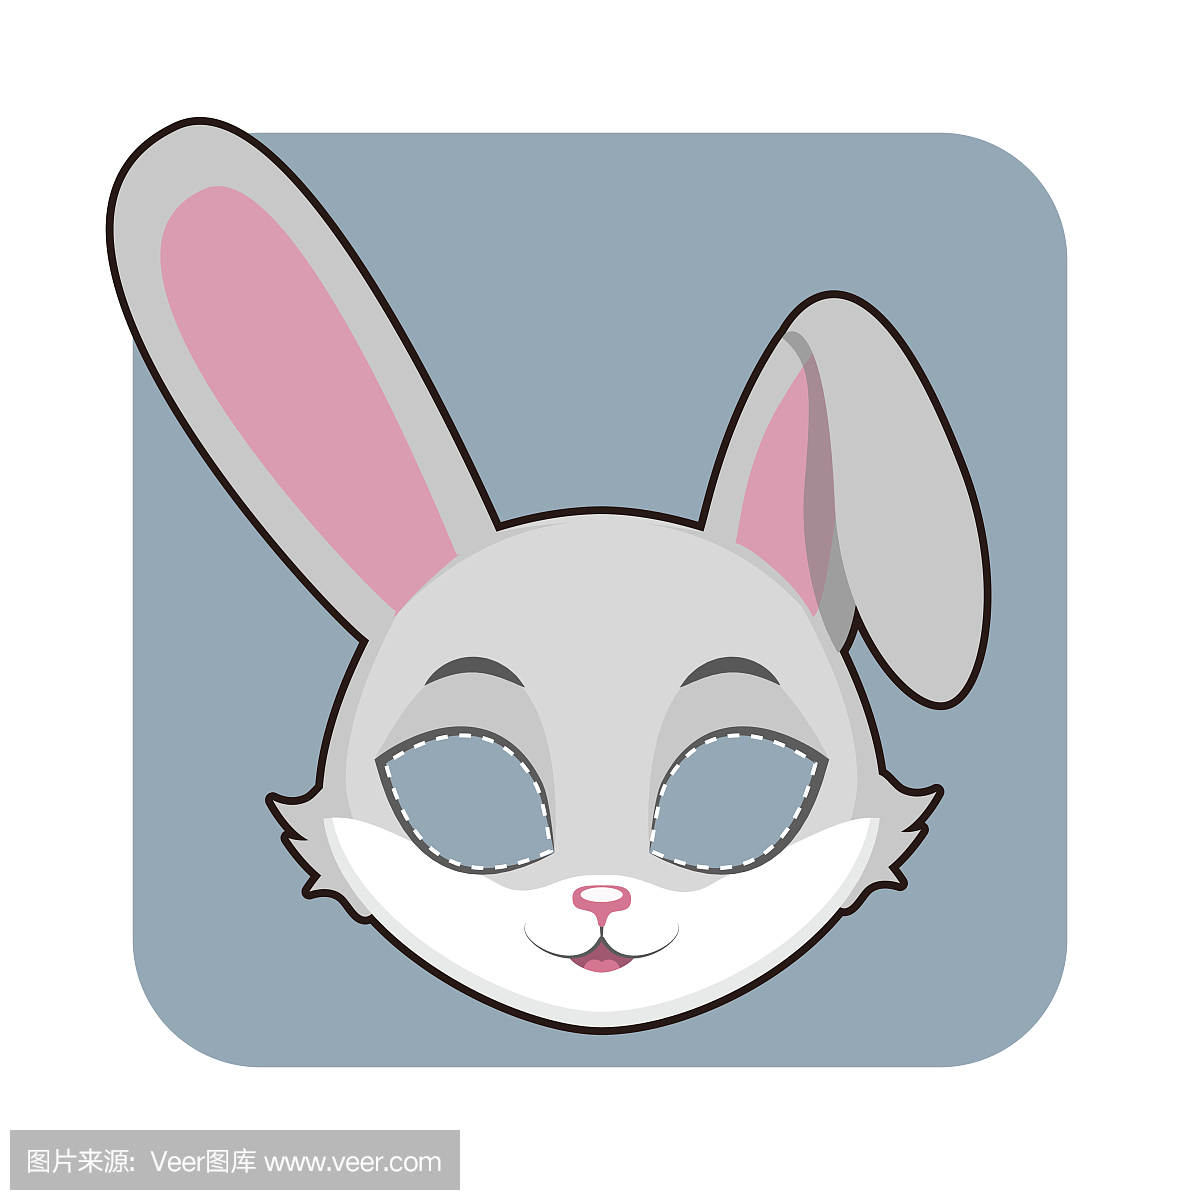 兔子面具为各种庆祝活动,派对,活动